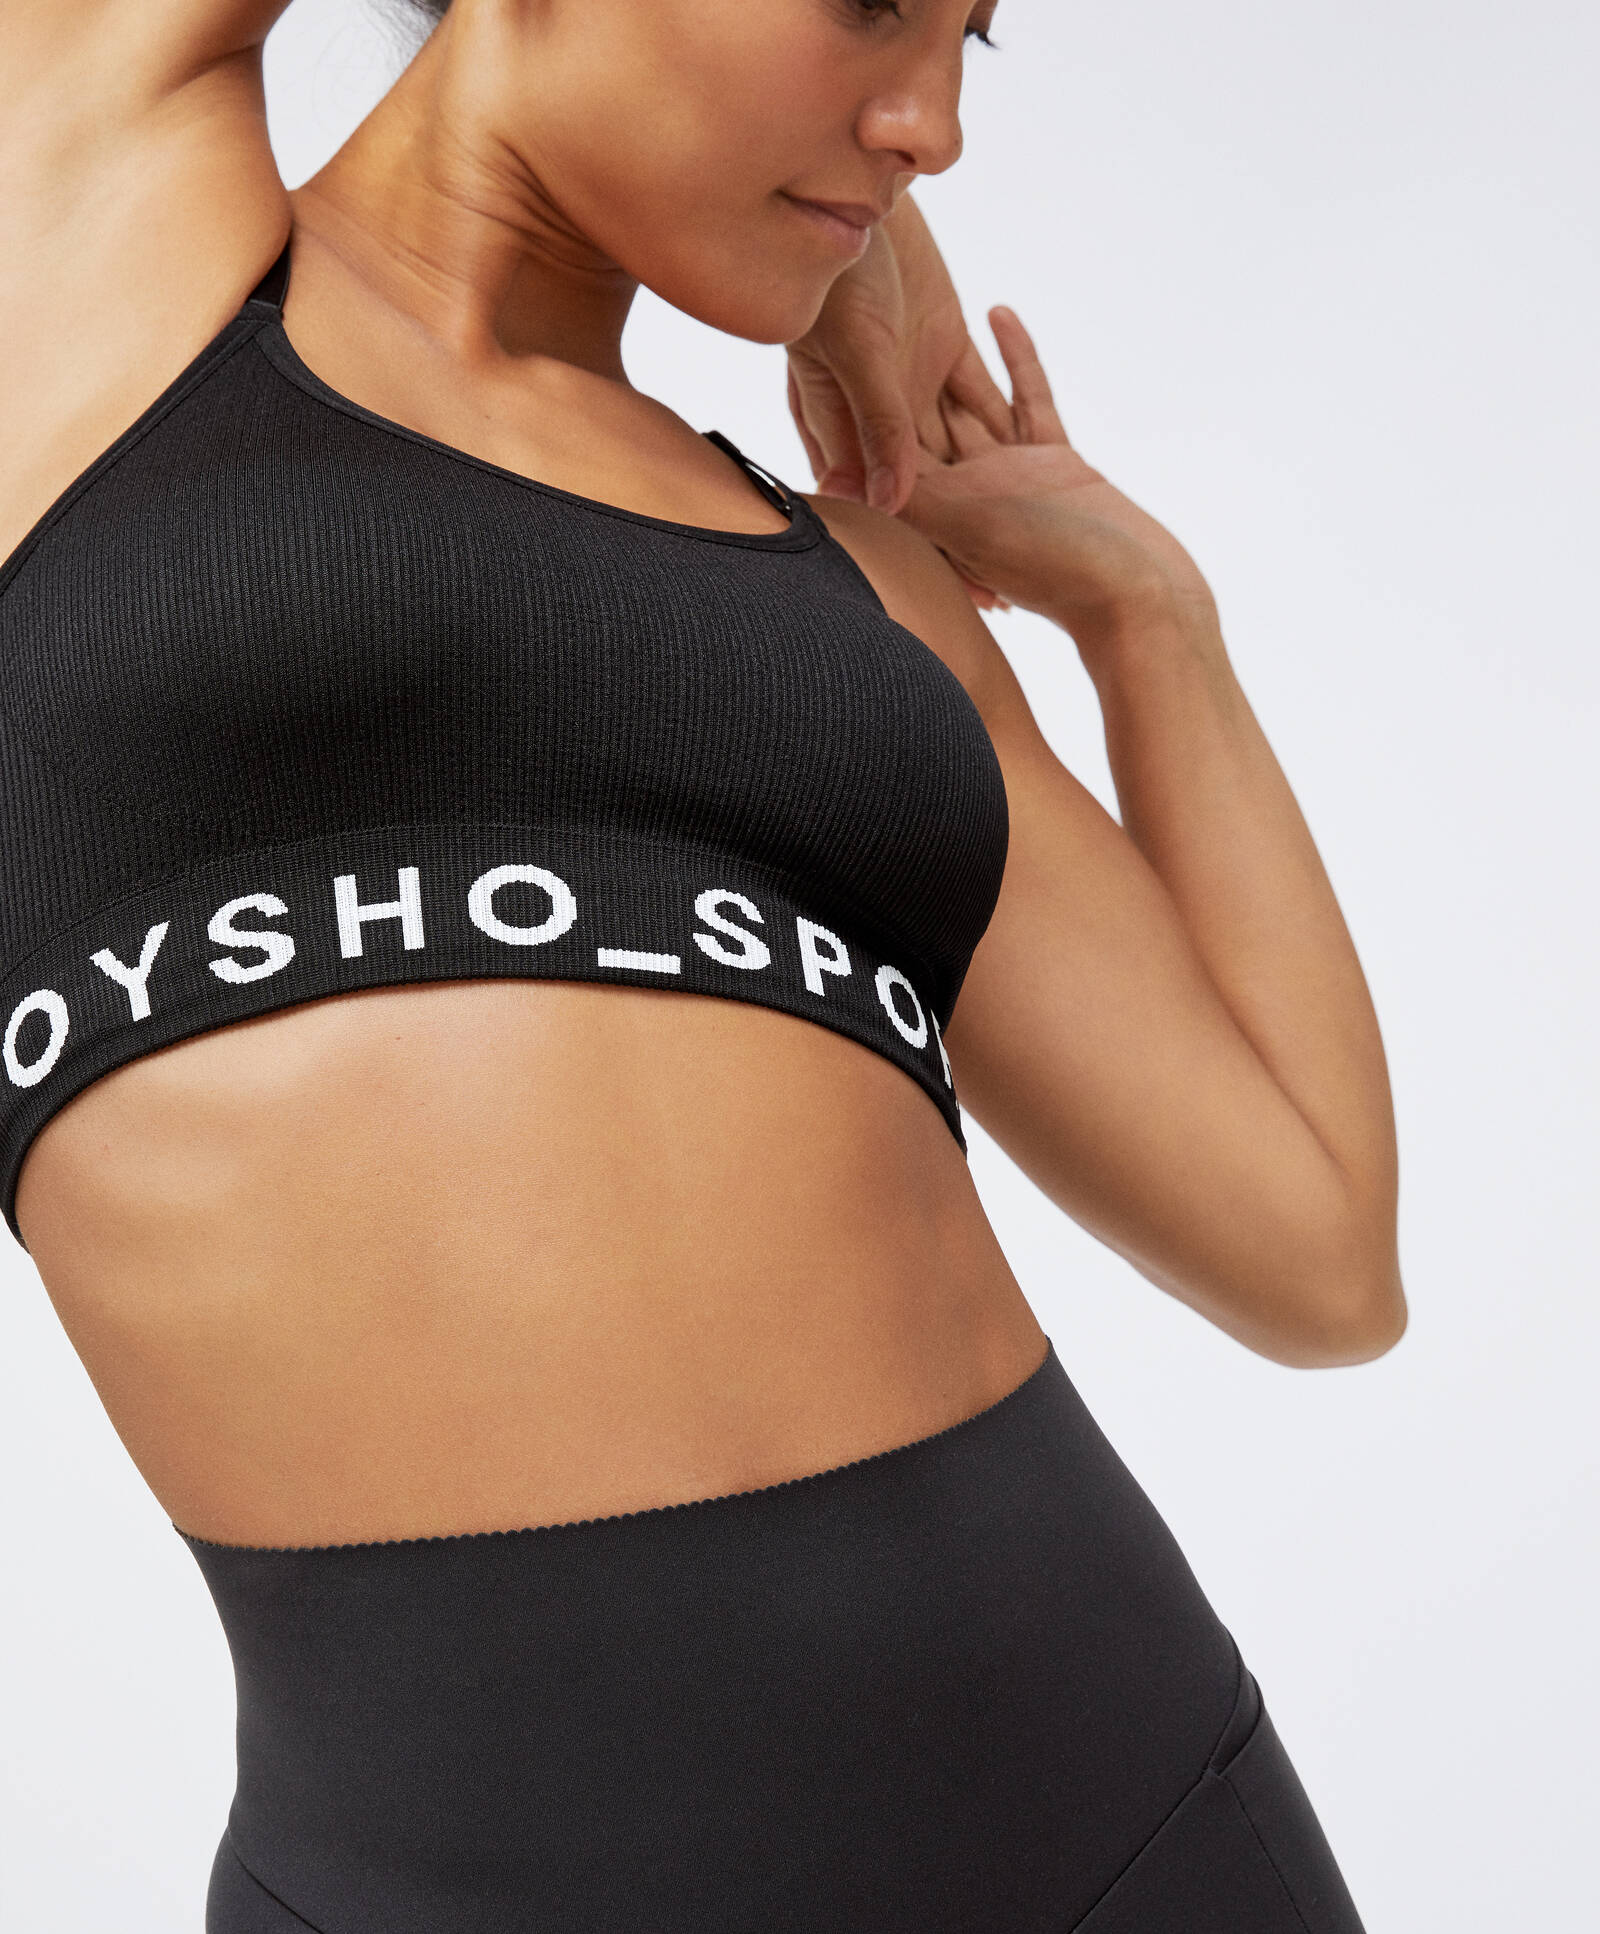 ЧЕРНЫЙ Бесшовный спортивный бюстгальтер с логотипом Oysho